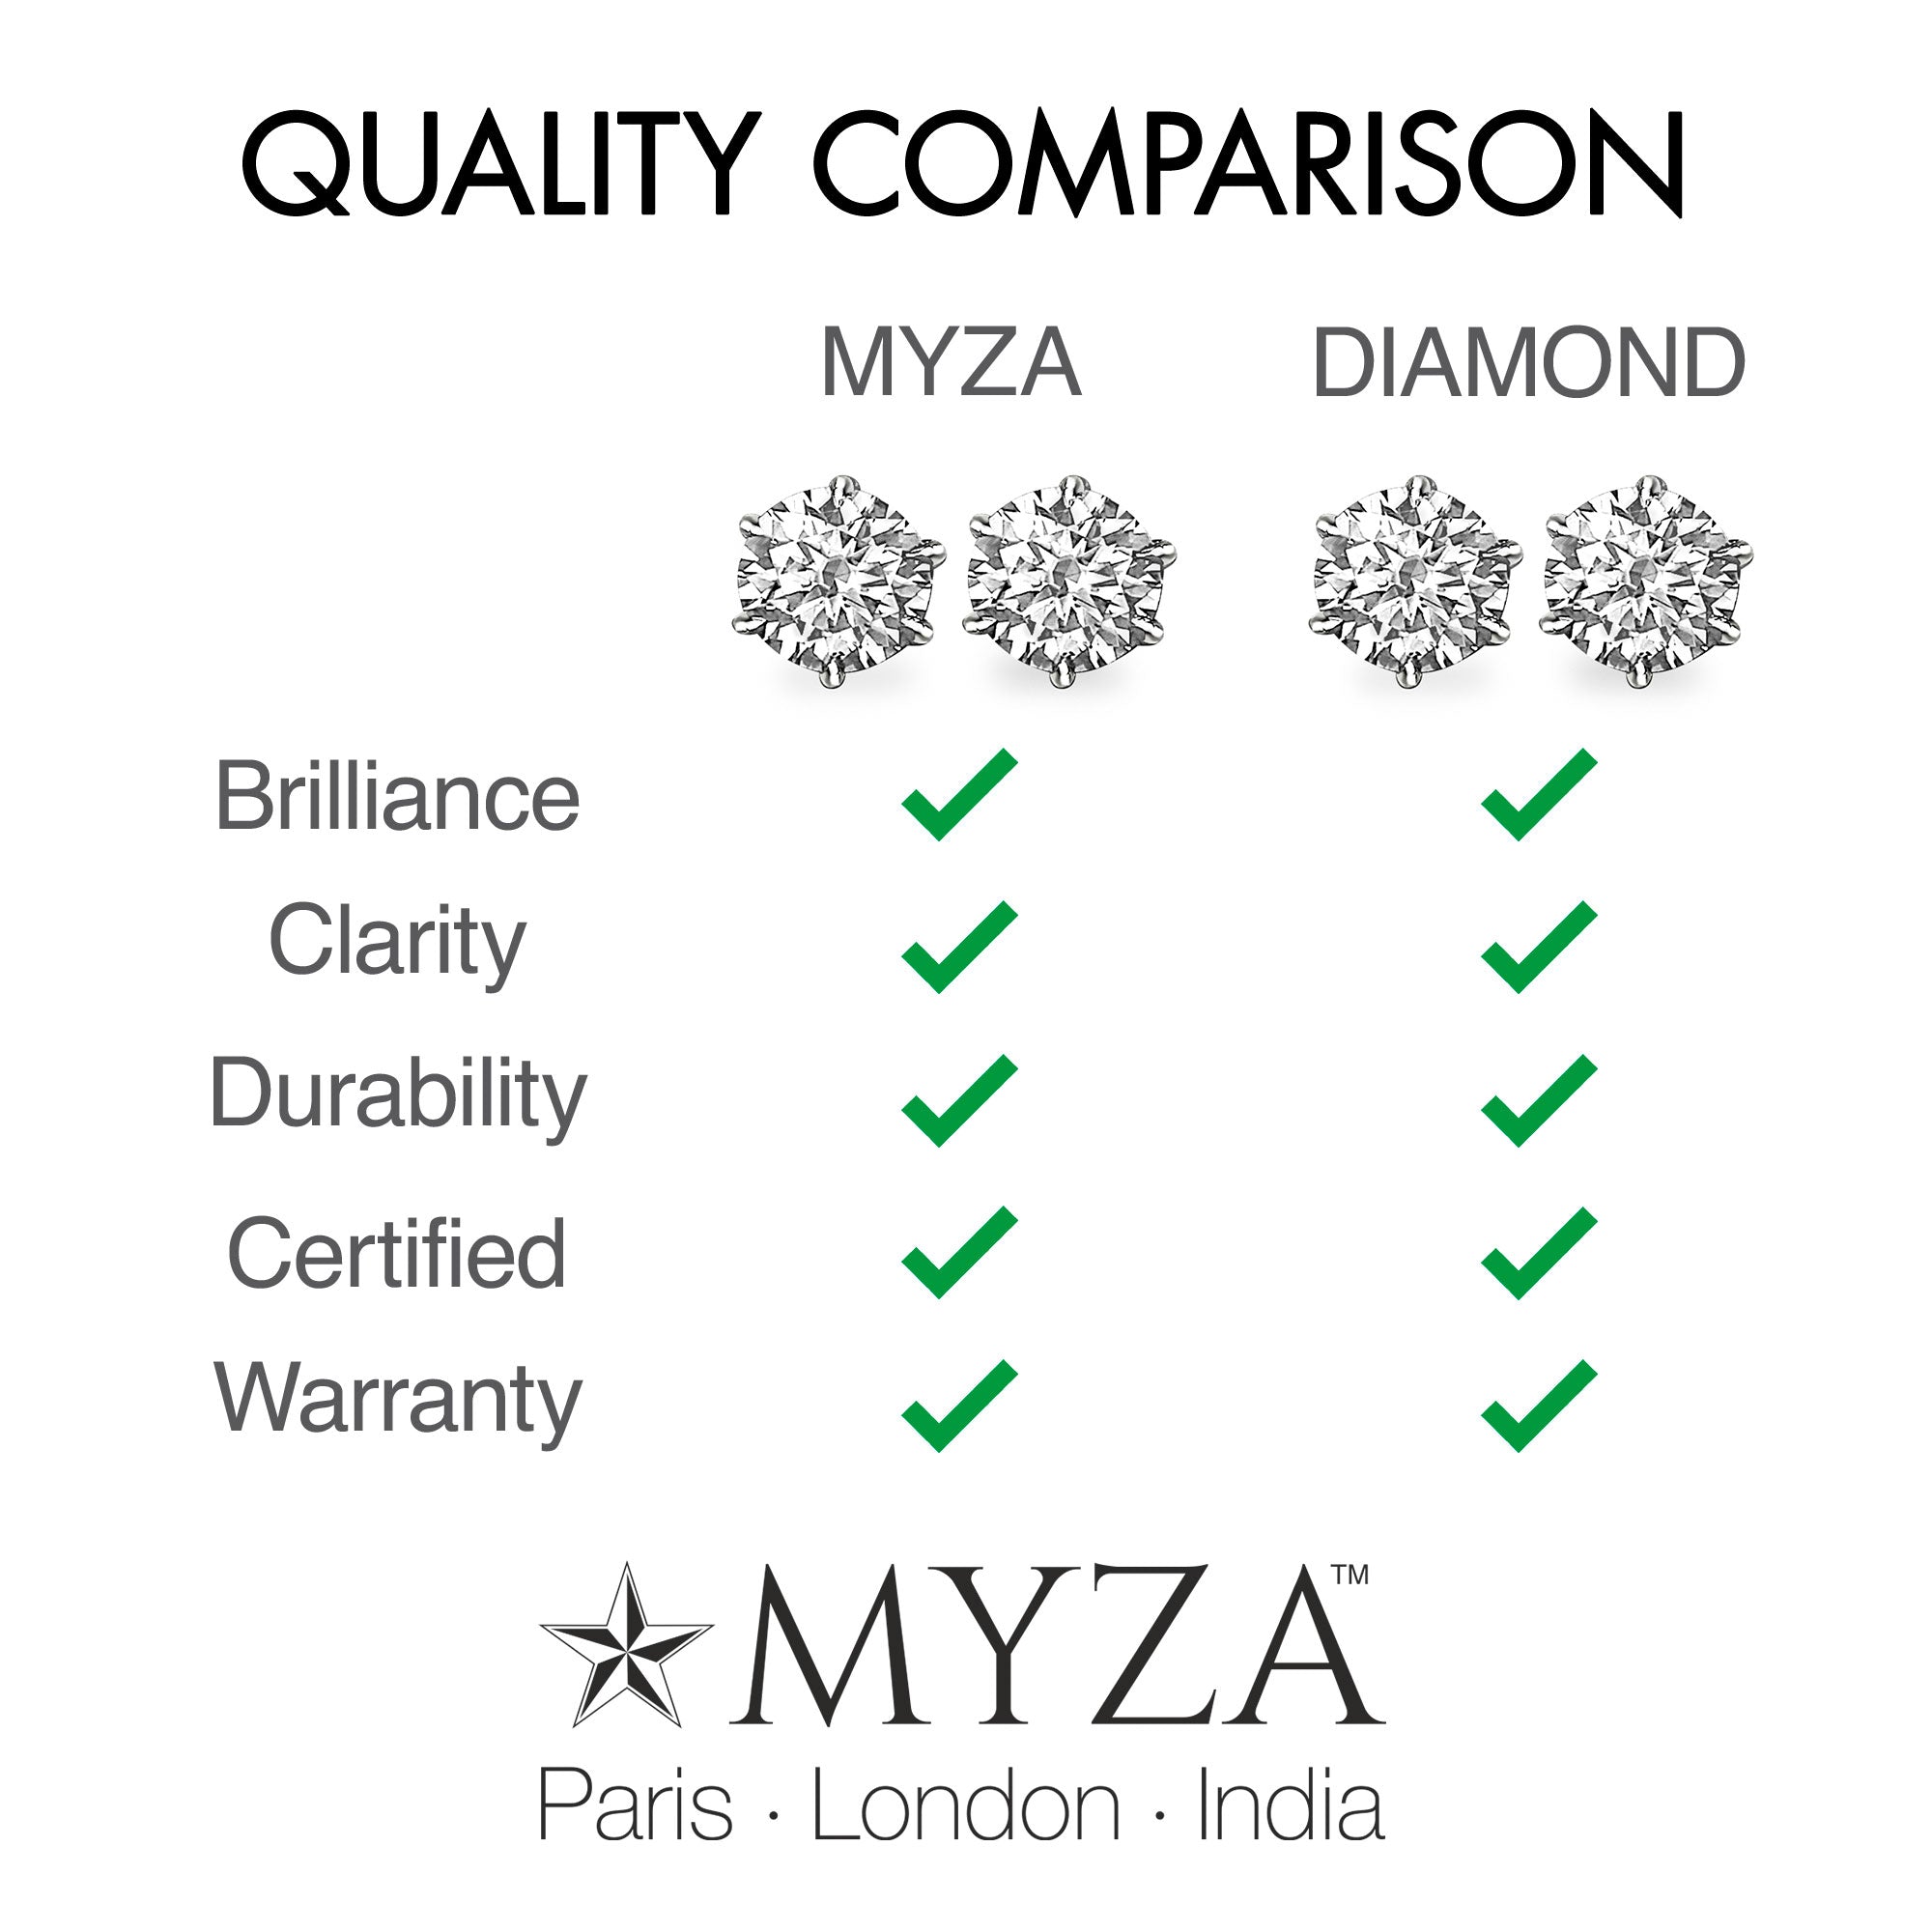 2-Carat MYZA Sterling Silver Earrings - MYZA 